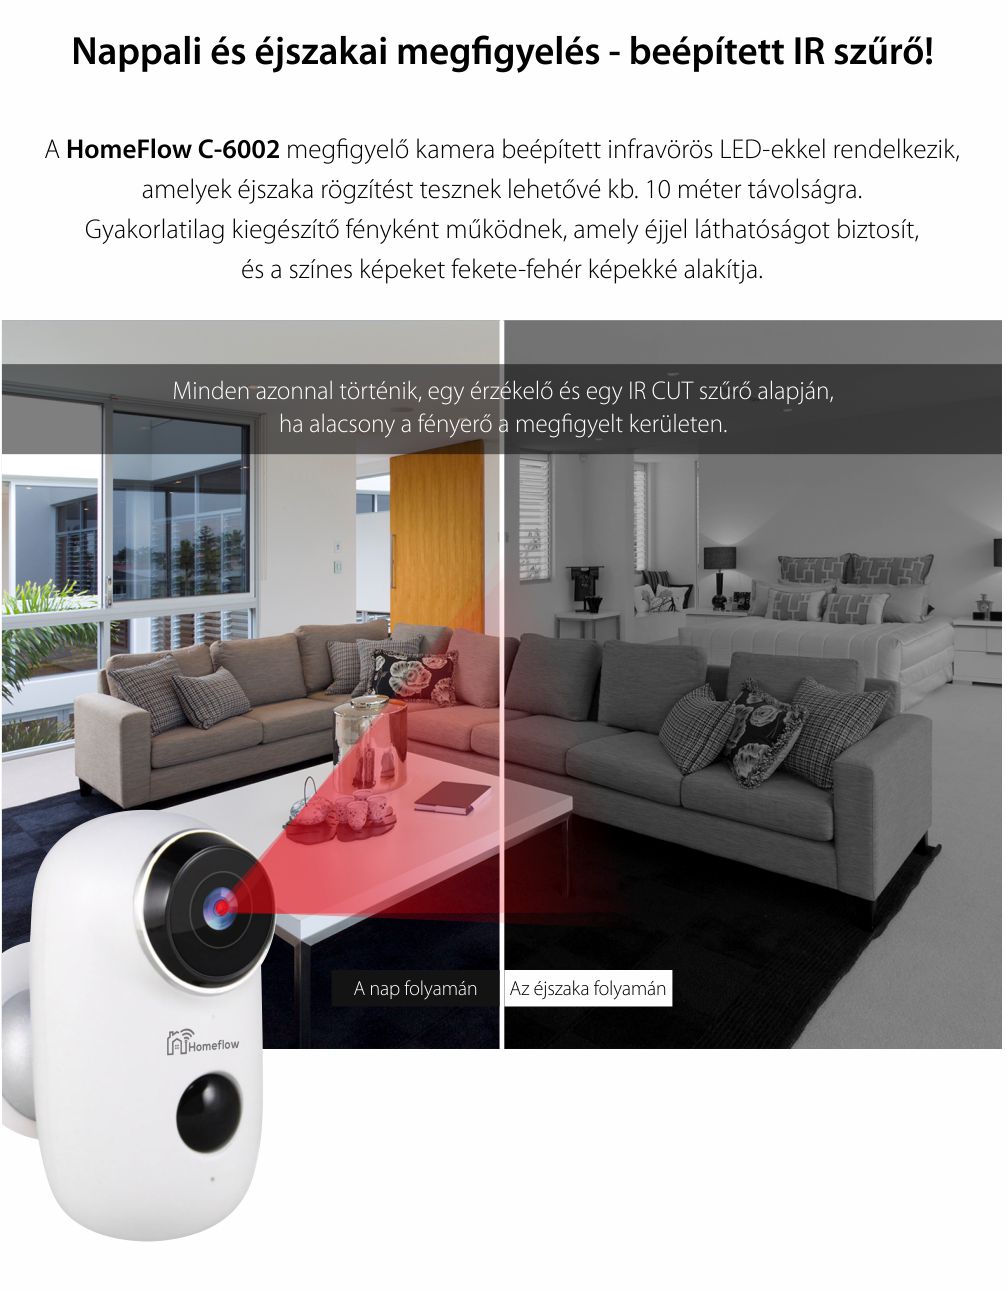 Vezeték Nélküli Homeflow C-6002 Intelligens Megfigyelő Kamera, Kétirányú kommunikáció, Mozgásérzékelés